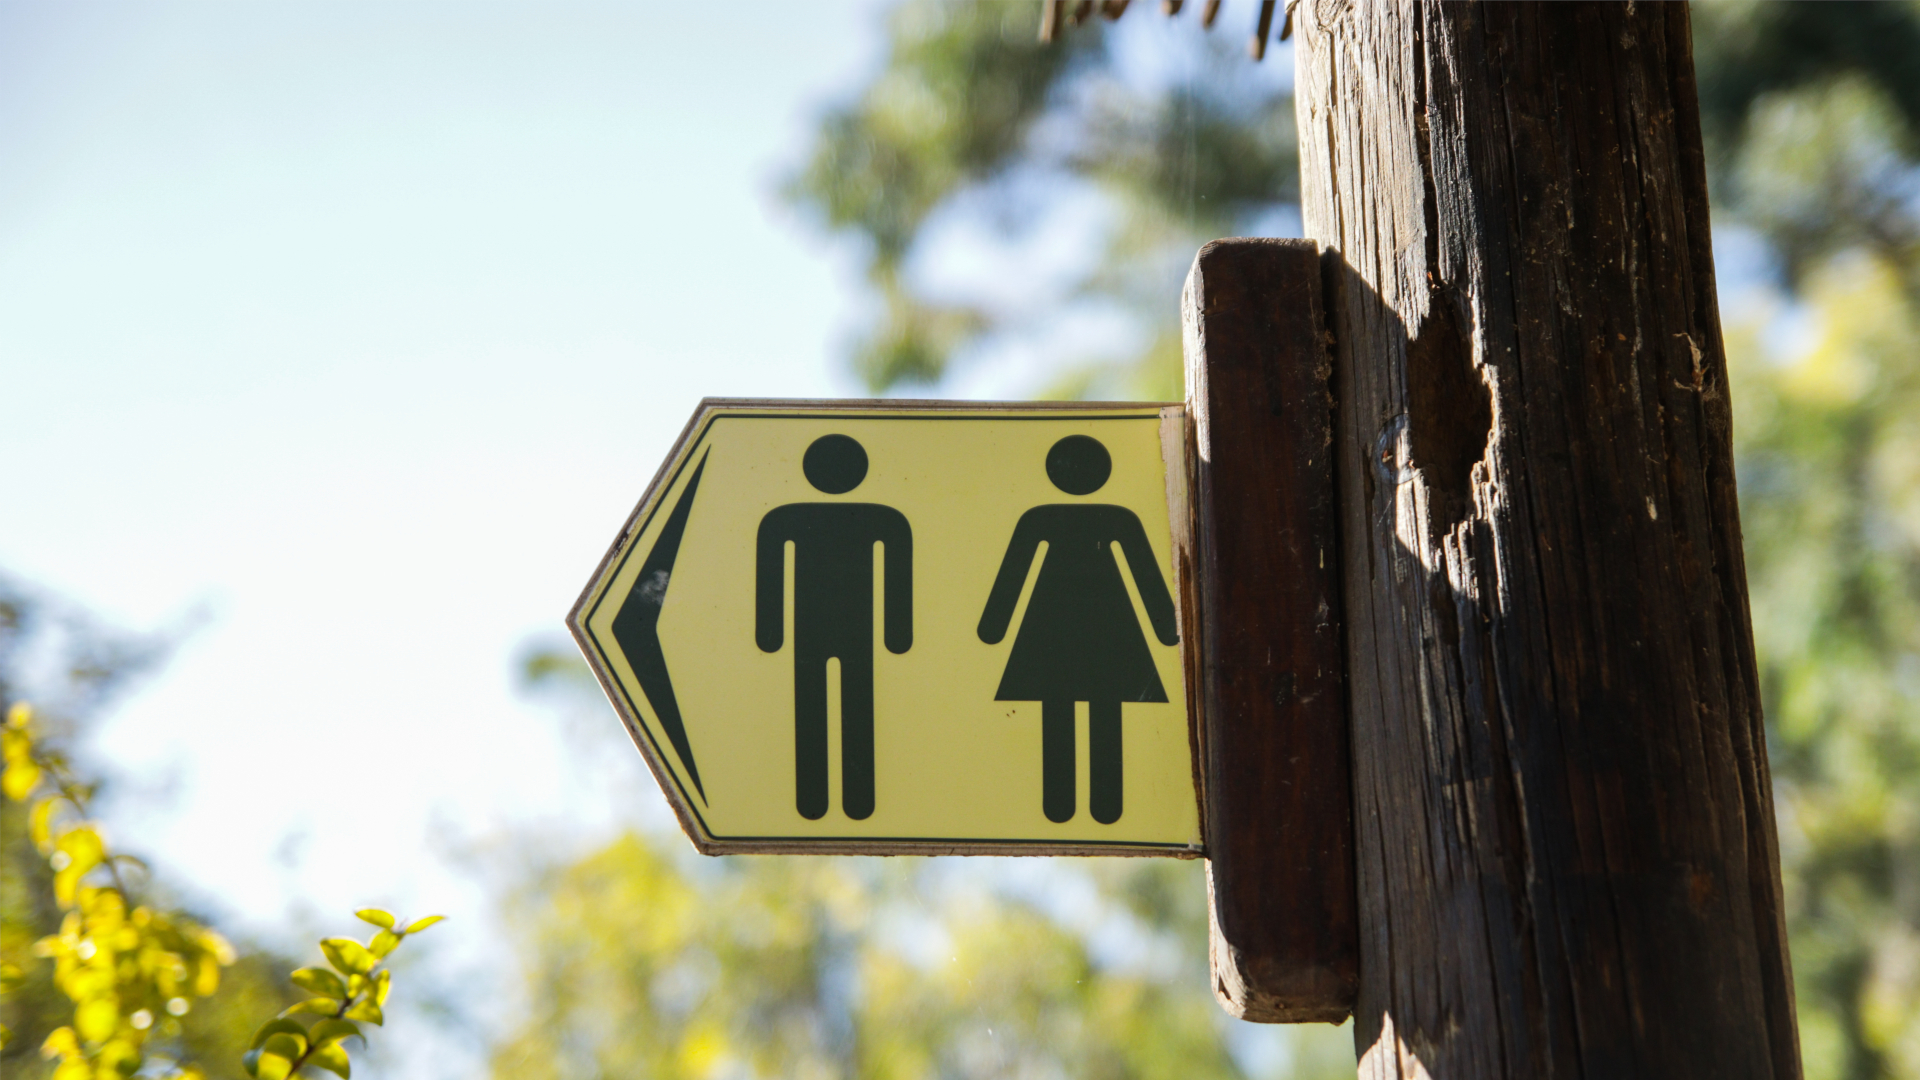 Señal de baños públicos para hombres y mujeres con fondo amarillo